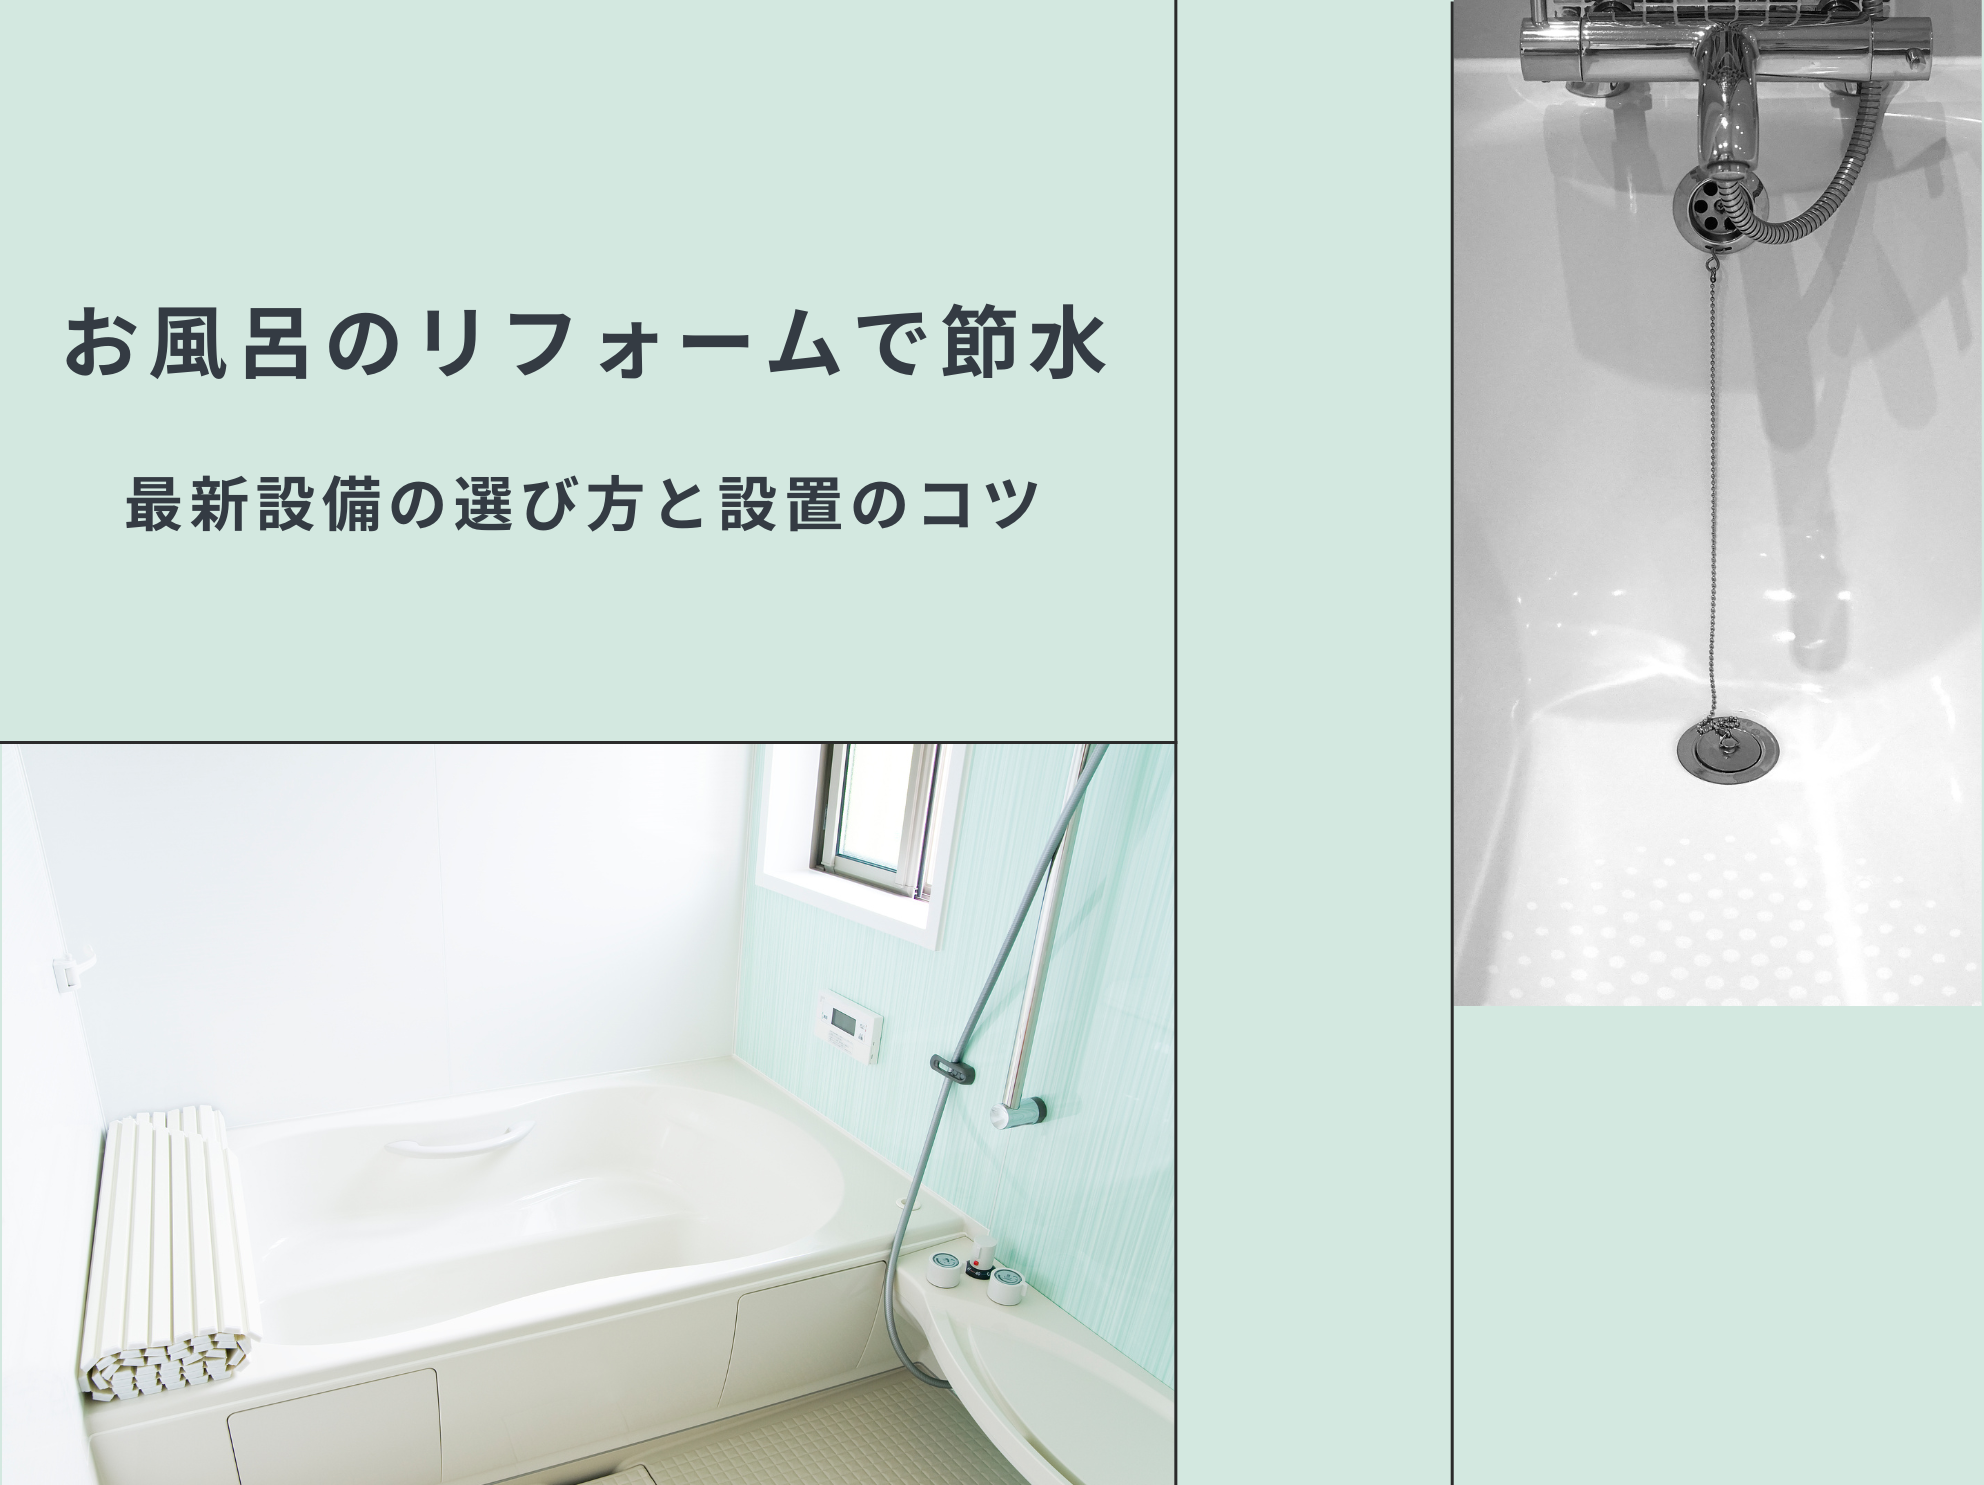 お風呂のリフォームで節水：最新設備の選び方と設置のコツ